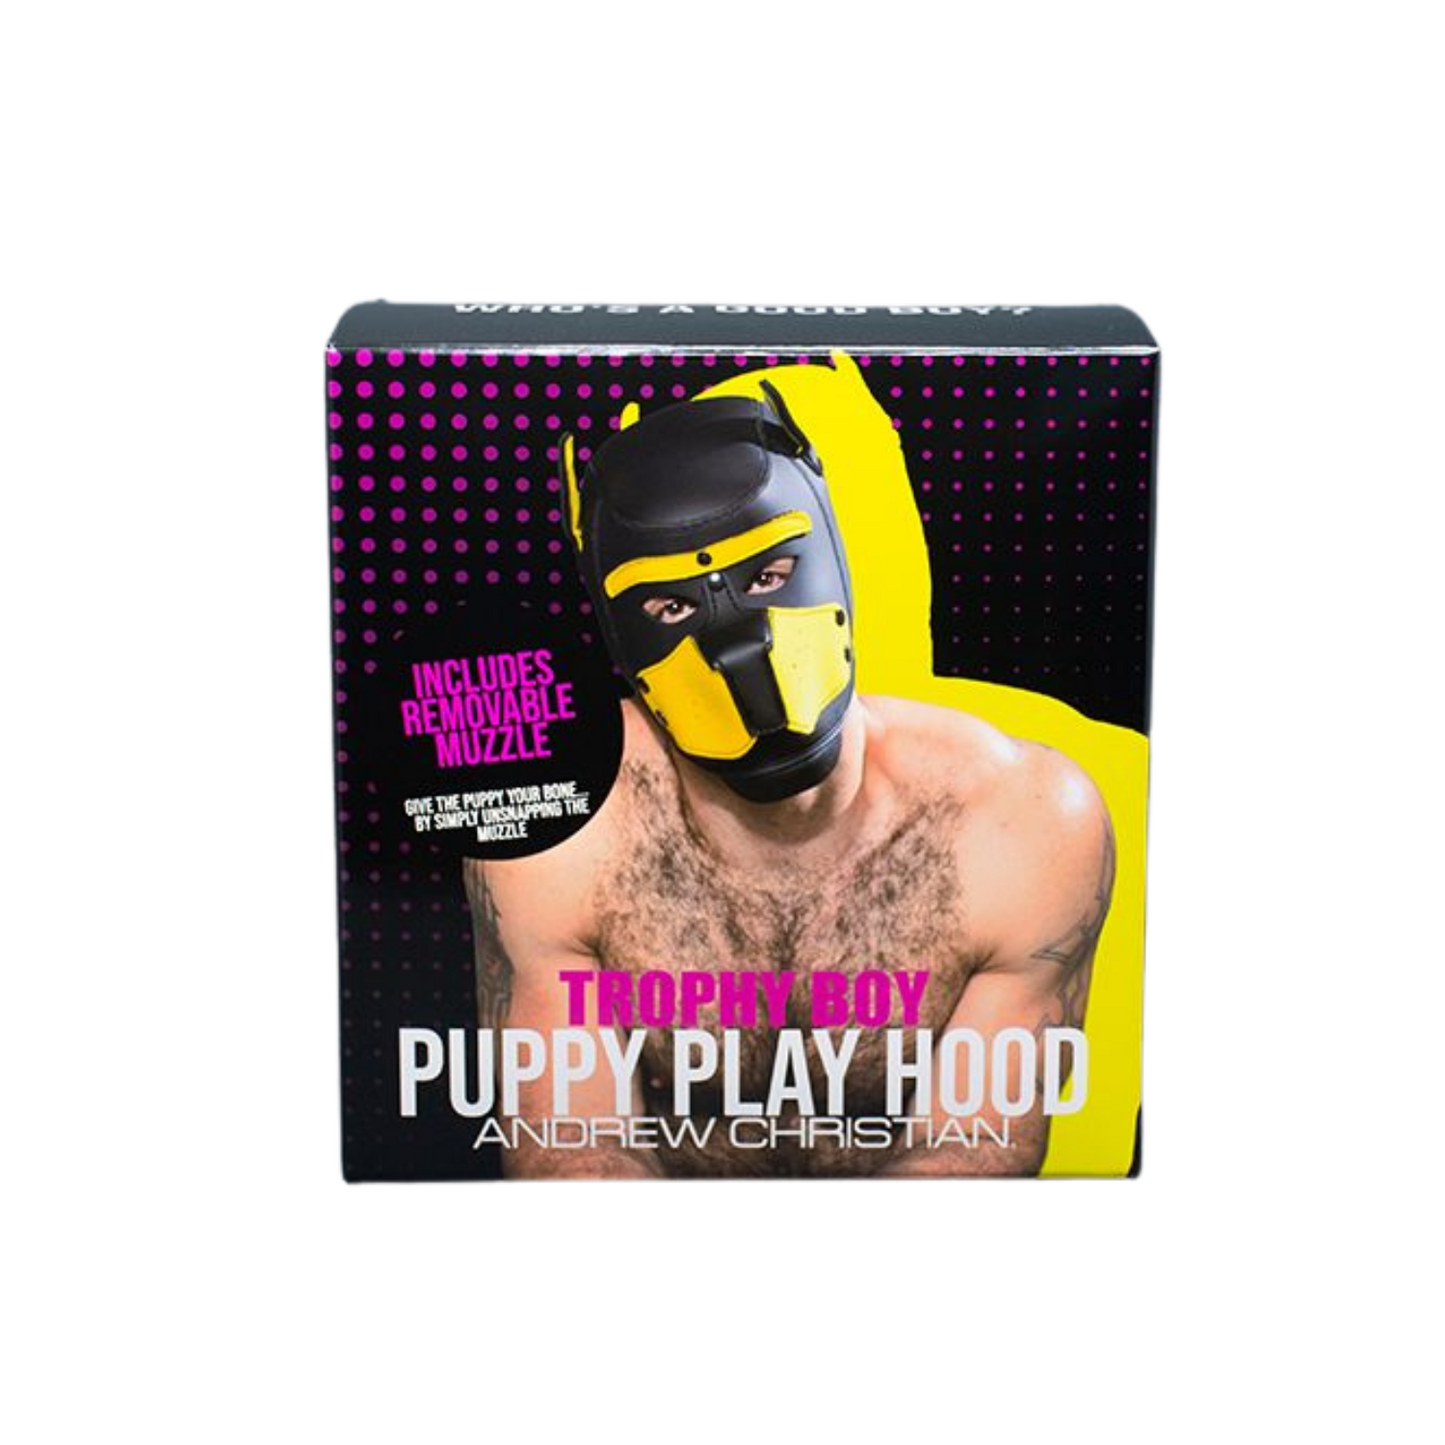 Zwart met geel puppy fetish masker voor mannen ontworpen door Andrew Christian en te koop bij Flavourez.